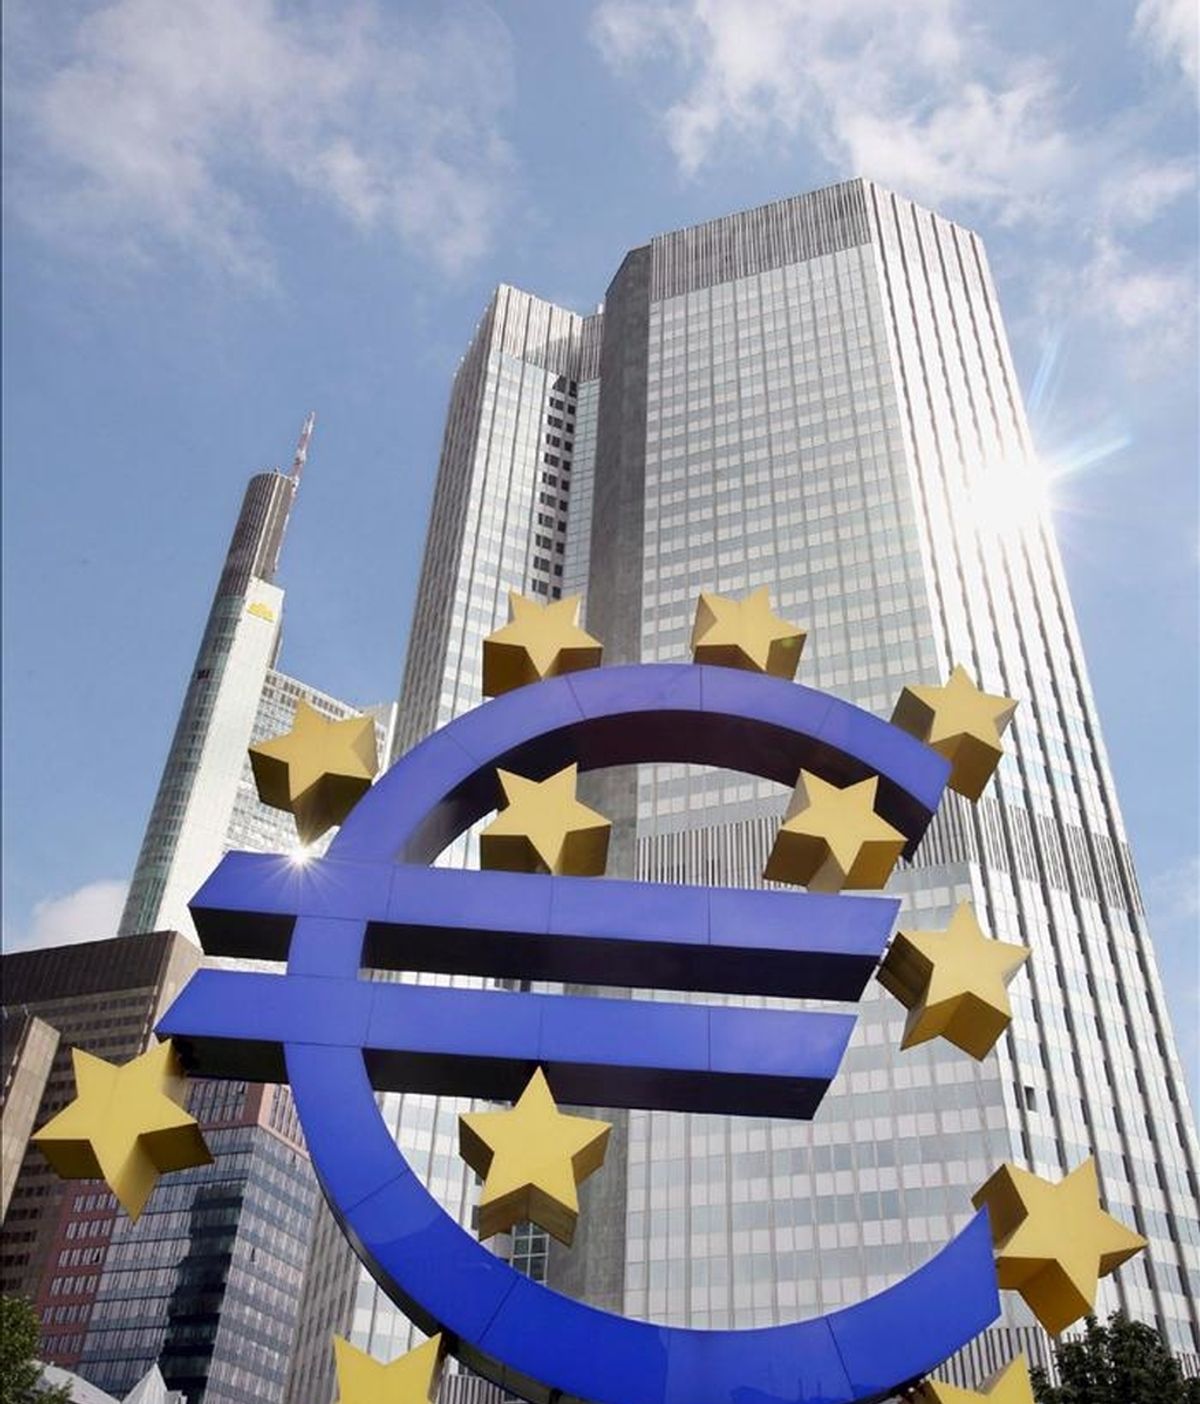 Los bonos de titulización (ABS) fueron el activo de garantía más usado en las operaciones de refinanciación del Banco Central Europeo (BCE) el año pasado, al mismo tiempo que aumentaron los valores de administraciones centrales por la crisis de la deuda soberana. EFE/Archivo